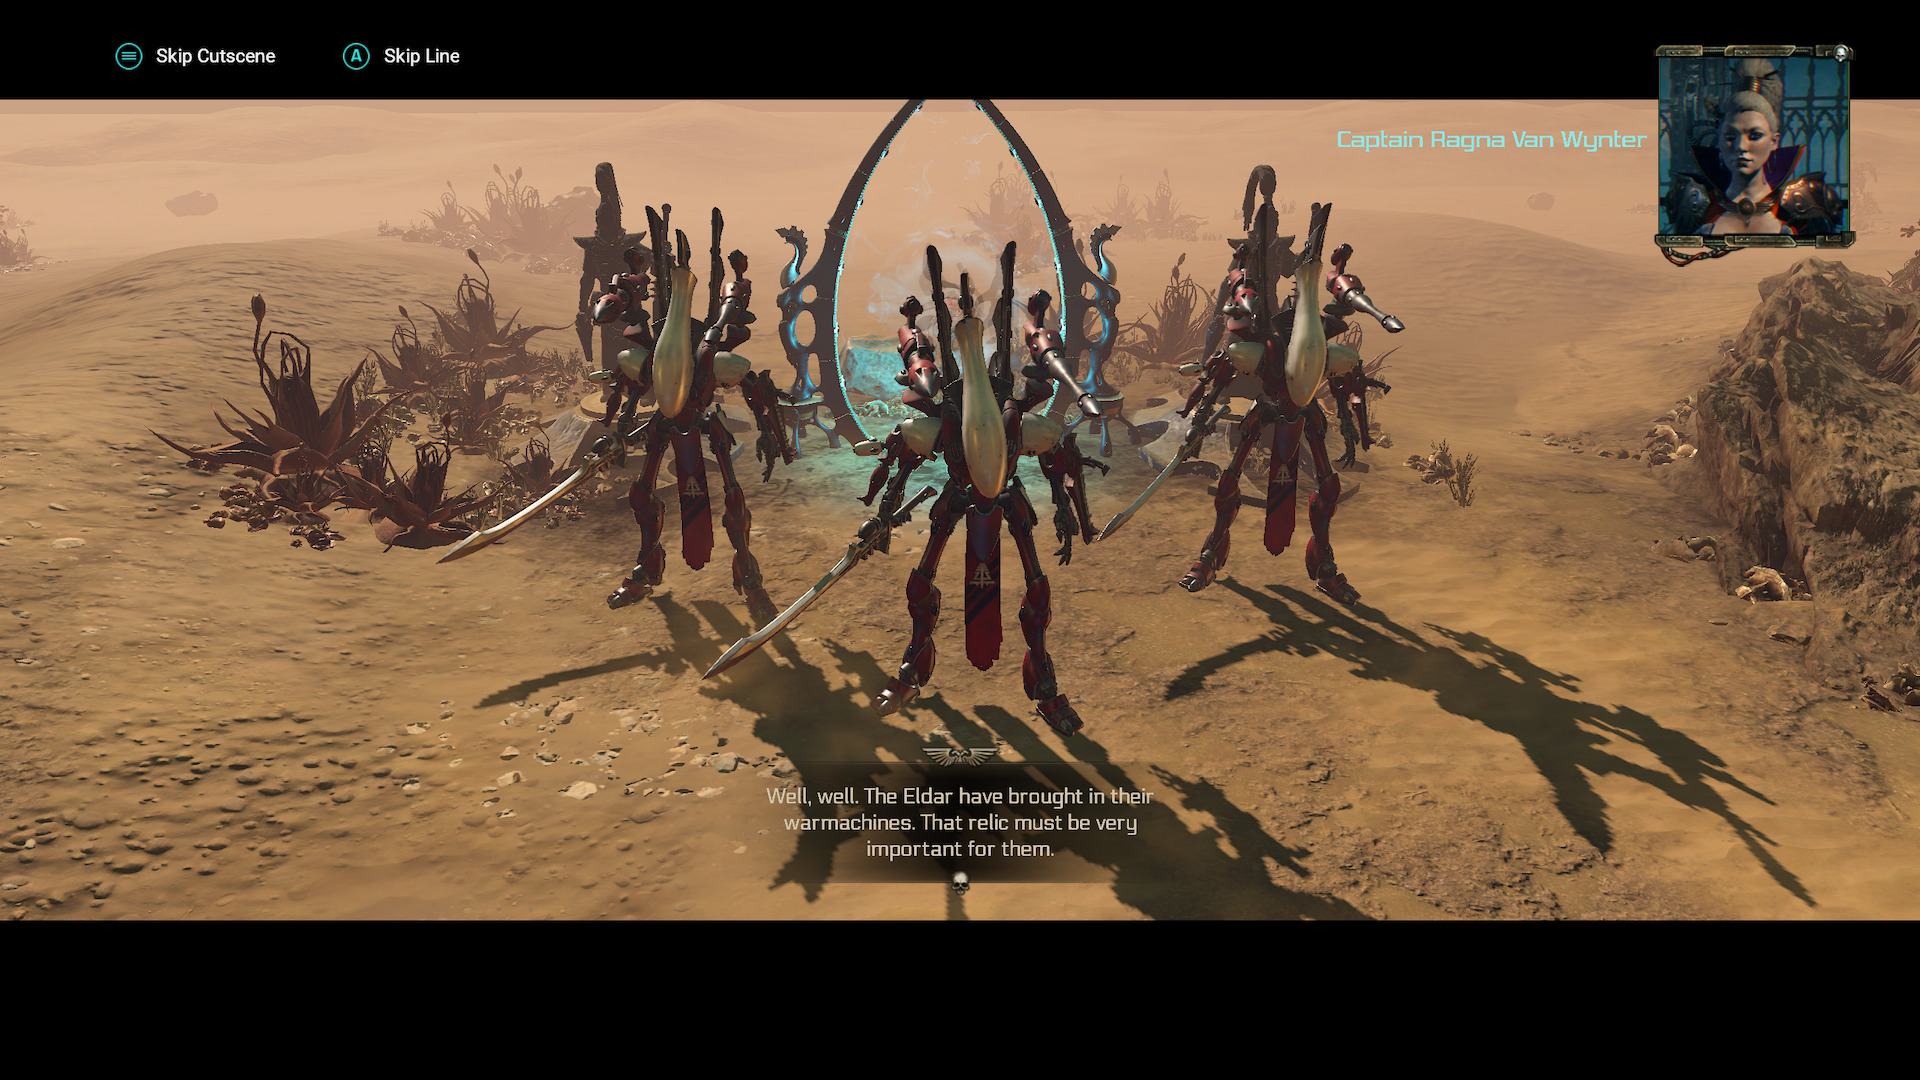 Пособие по сжиганию еретиков: Обзор Warhammer 40,000: Inquisitor – Martyr